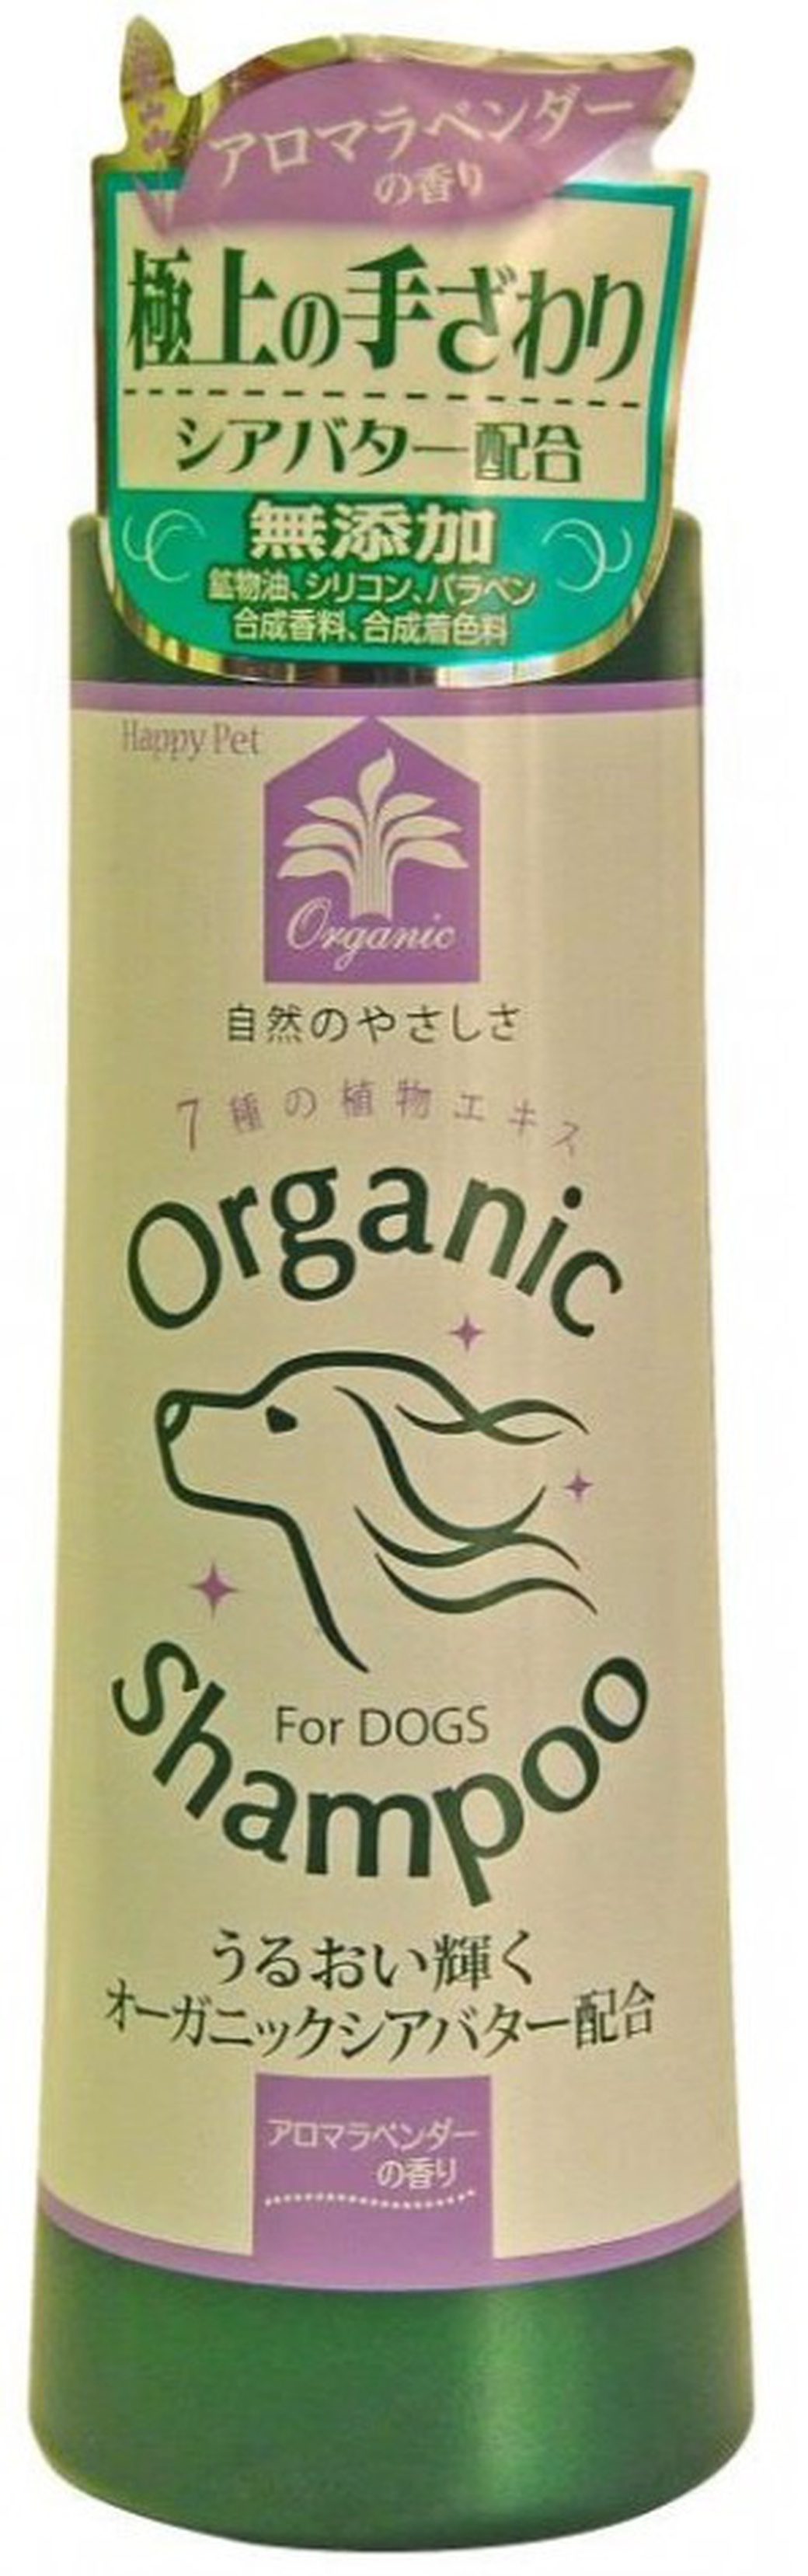 Органический шампунь Japan Premium Pet с маслом Ши для собак с ароматом лаванды фото